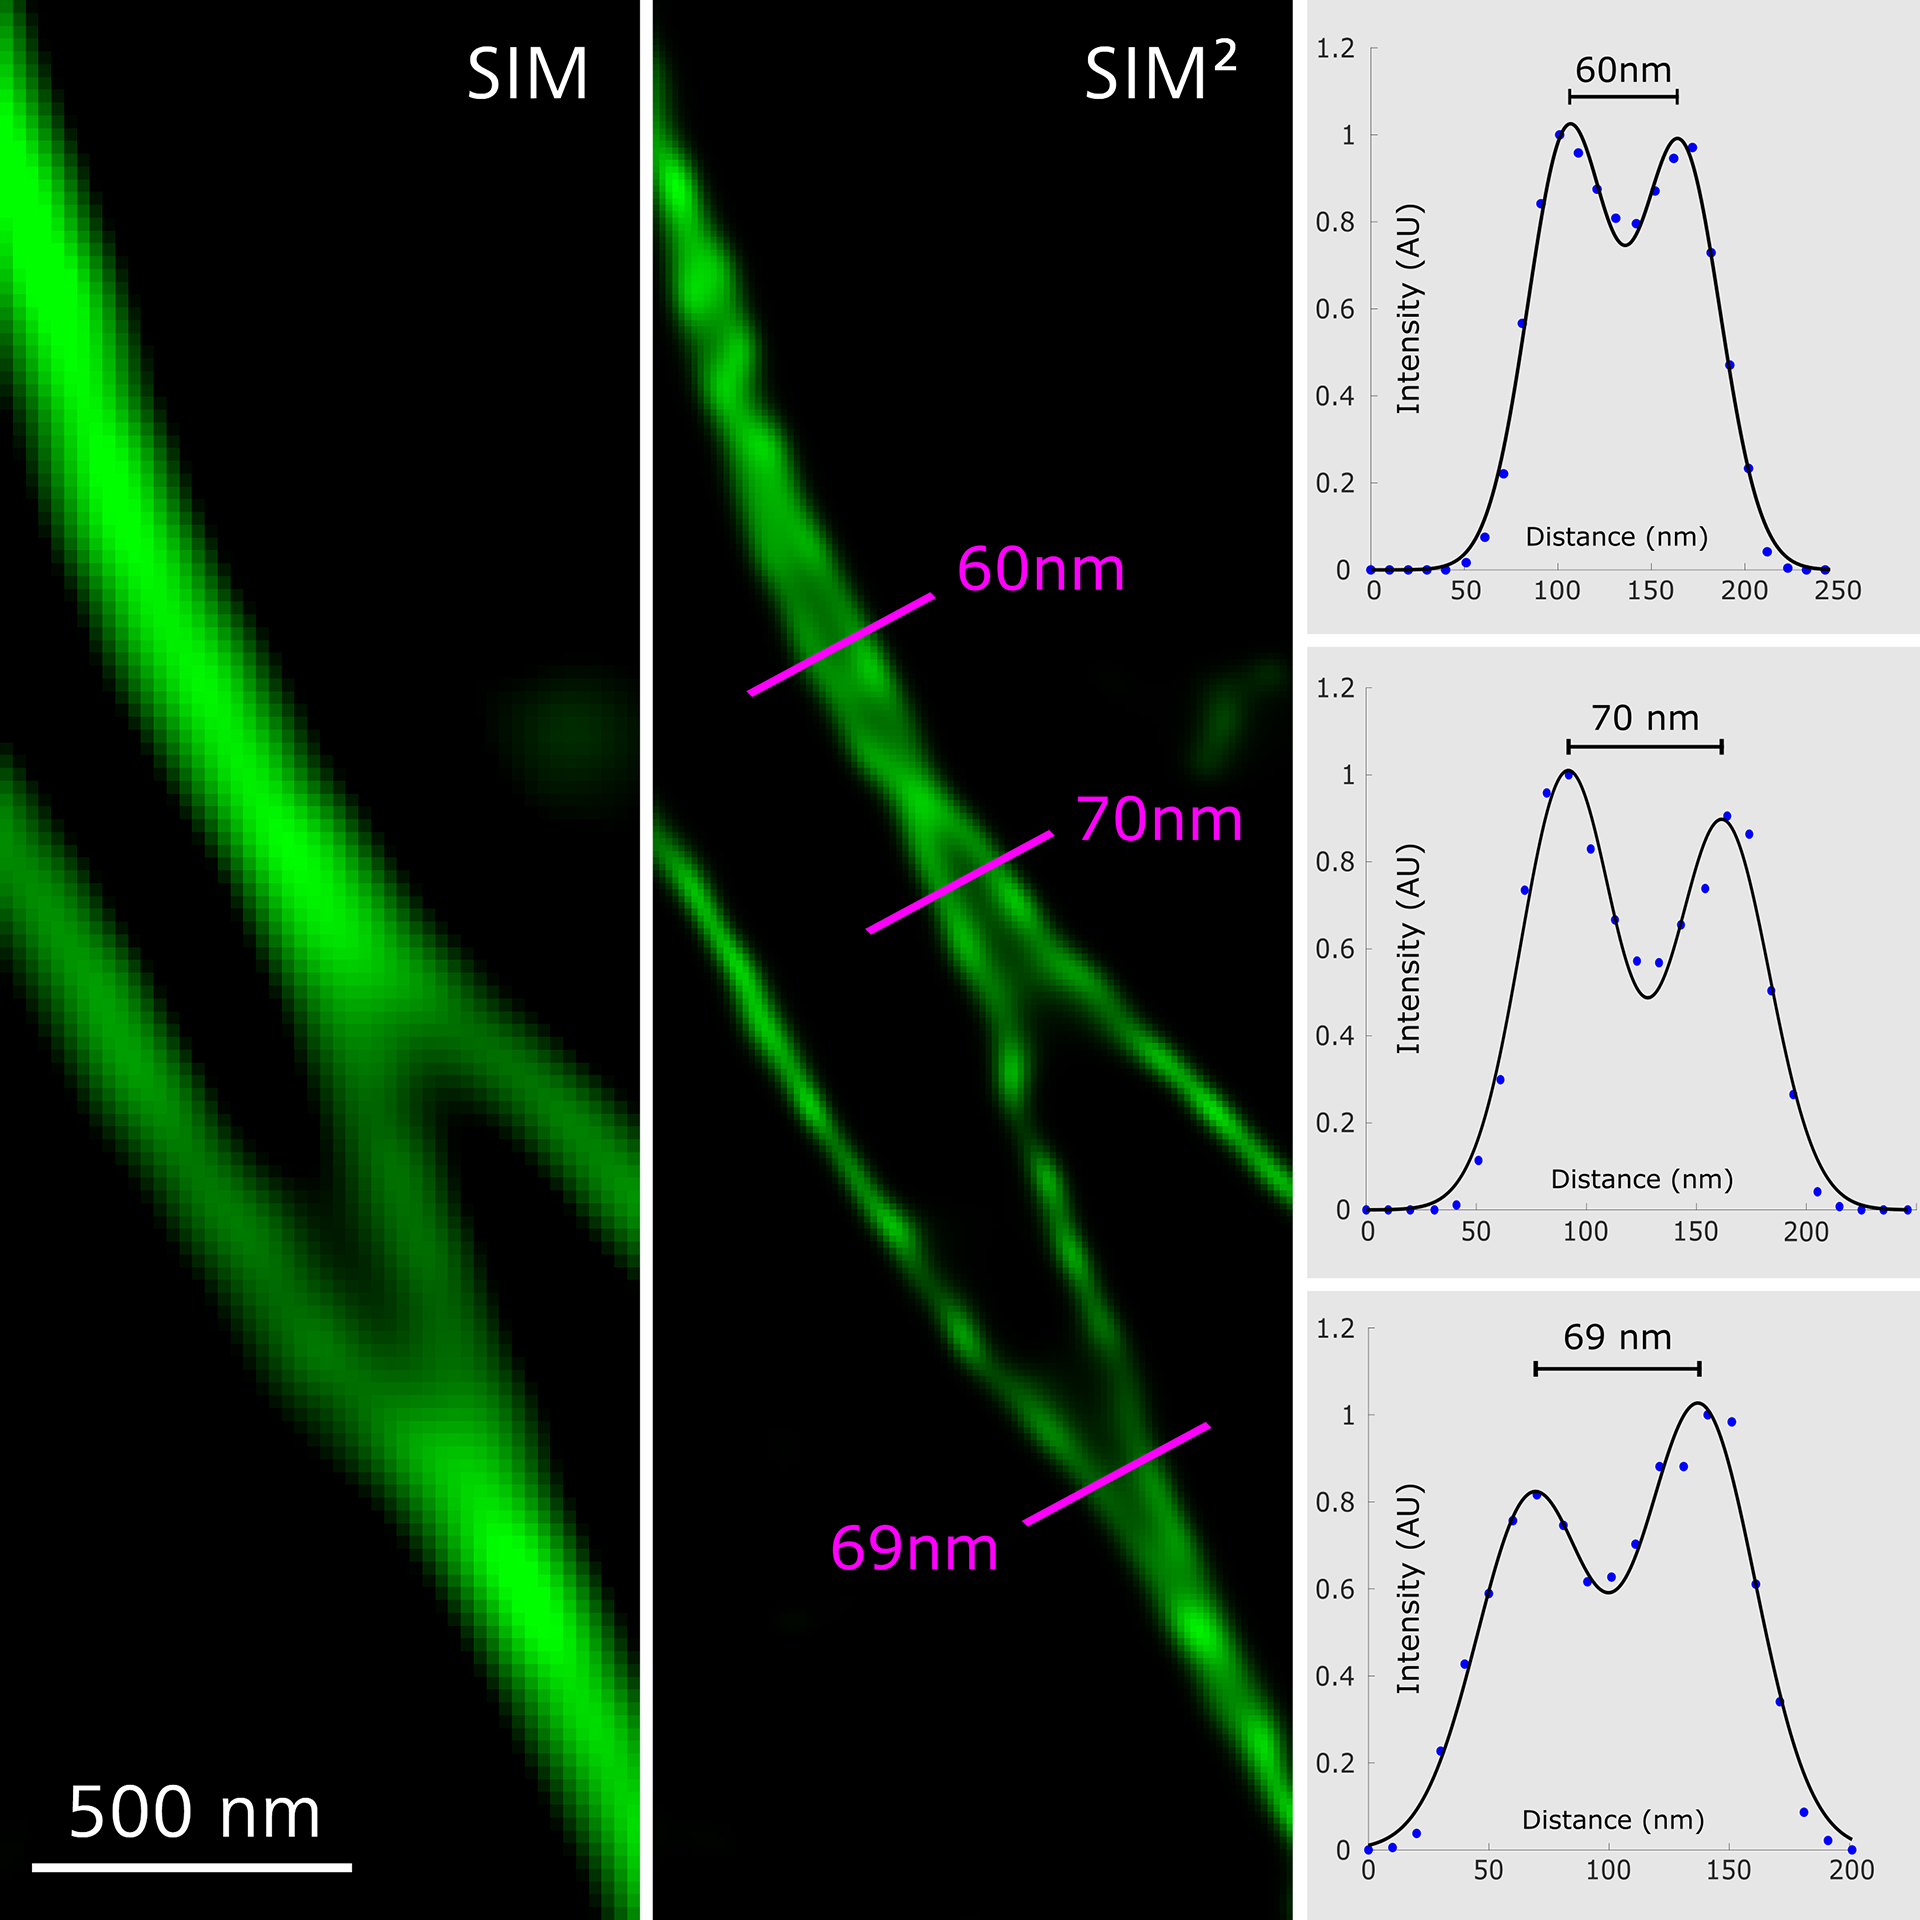 Les images de cellules COS-7 colorées avec l'anti-alpha-Tubuline Alexa fluor 488 ont été traitées avec les algorithmes SIM conventionnels basés sur le filtre de Wiener généralisé et avec la nouvelle reconstruction SIM². Les images montrent une amélioration de la résolution pour SIM² par rapport à SIM. Objectif : Plan-Apochromat 63× / 1.4 huile.